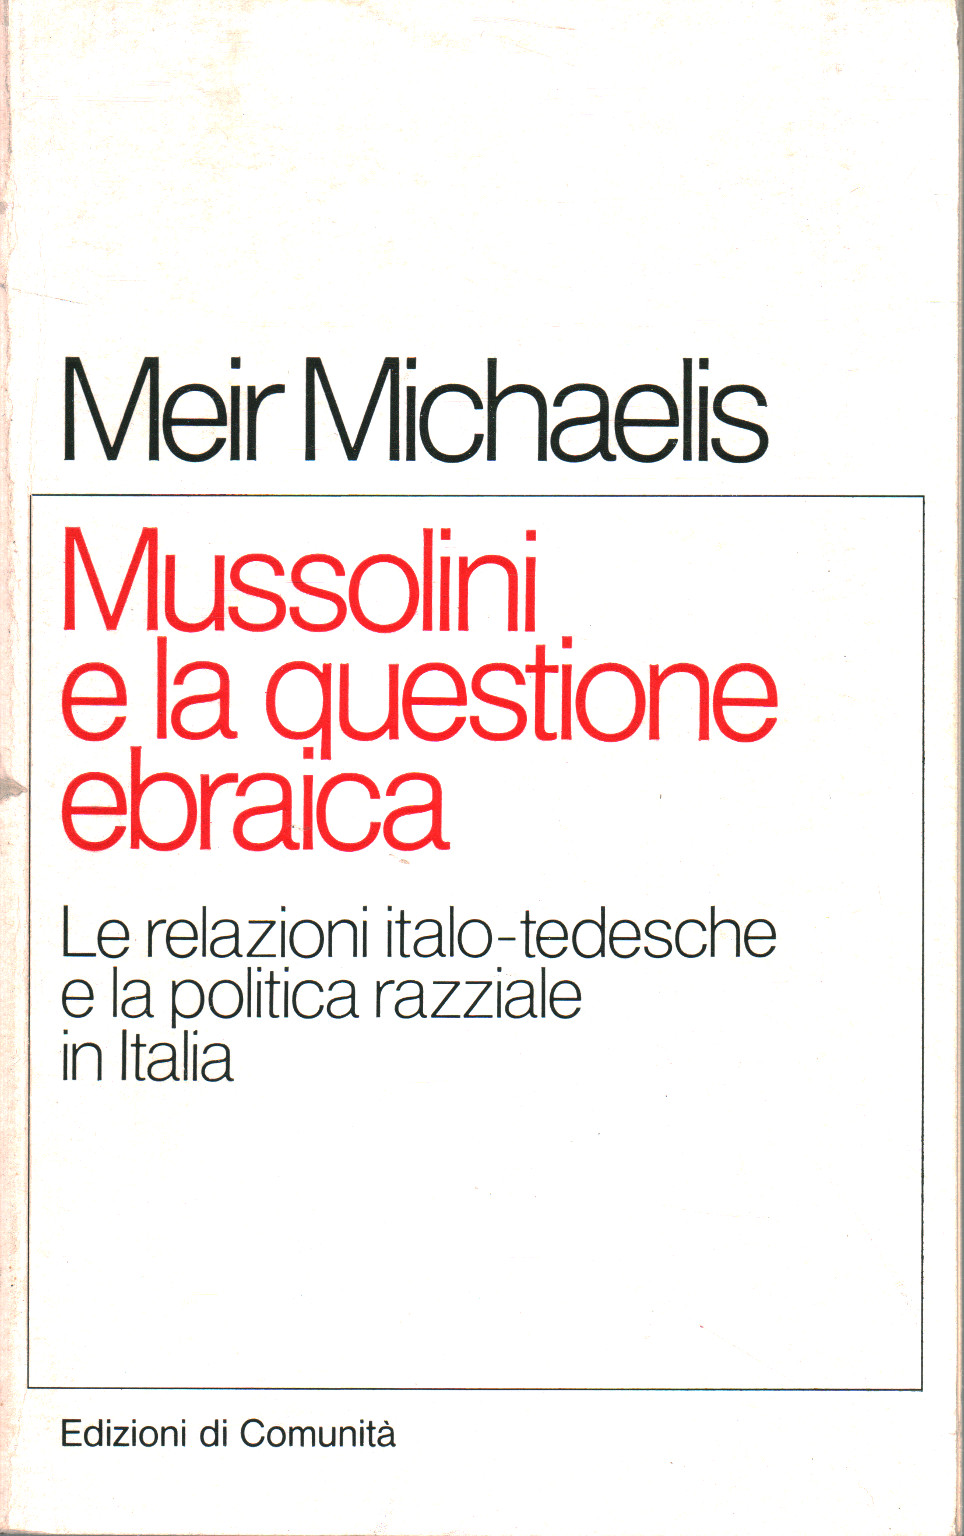 Mussolini e la questione ebraica, Meir Michelis